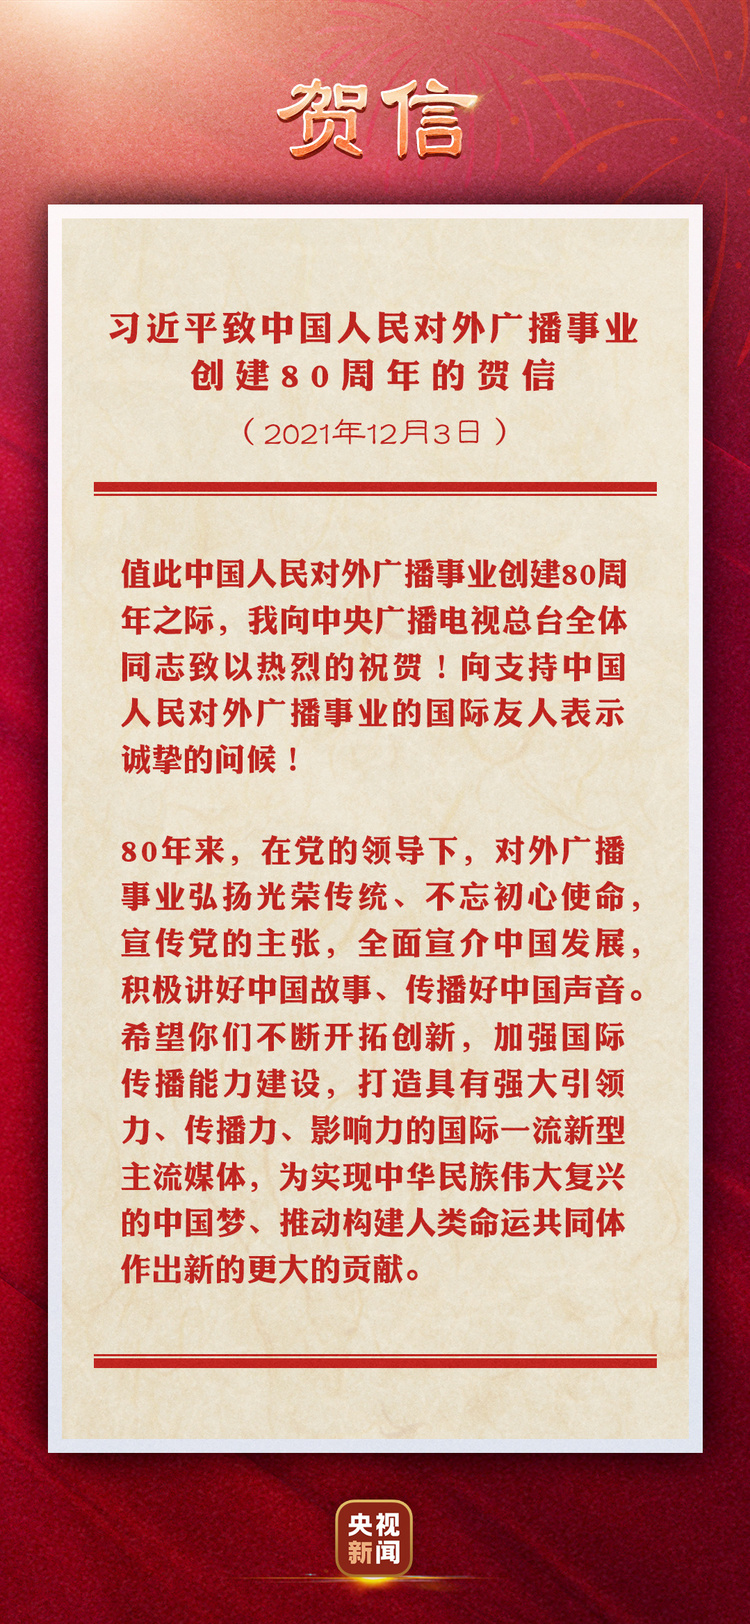 习近平致中国人民对外广播事业创建80周年的贺信